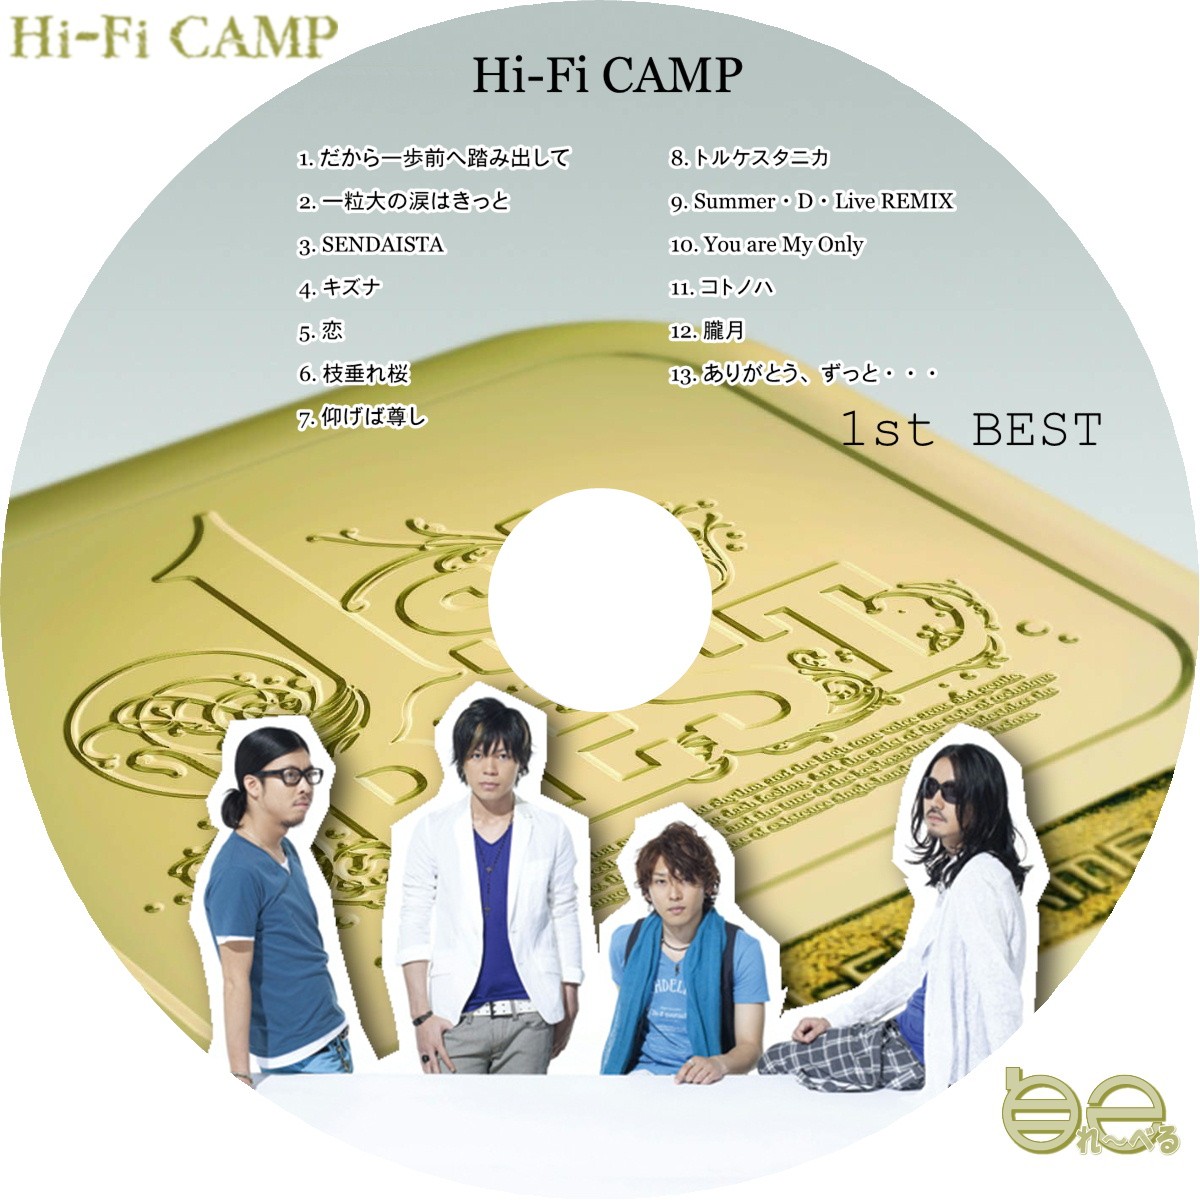 ■Hi-Fi CAMP - 1st BEST